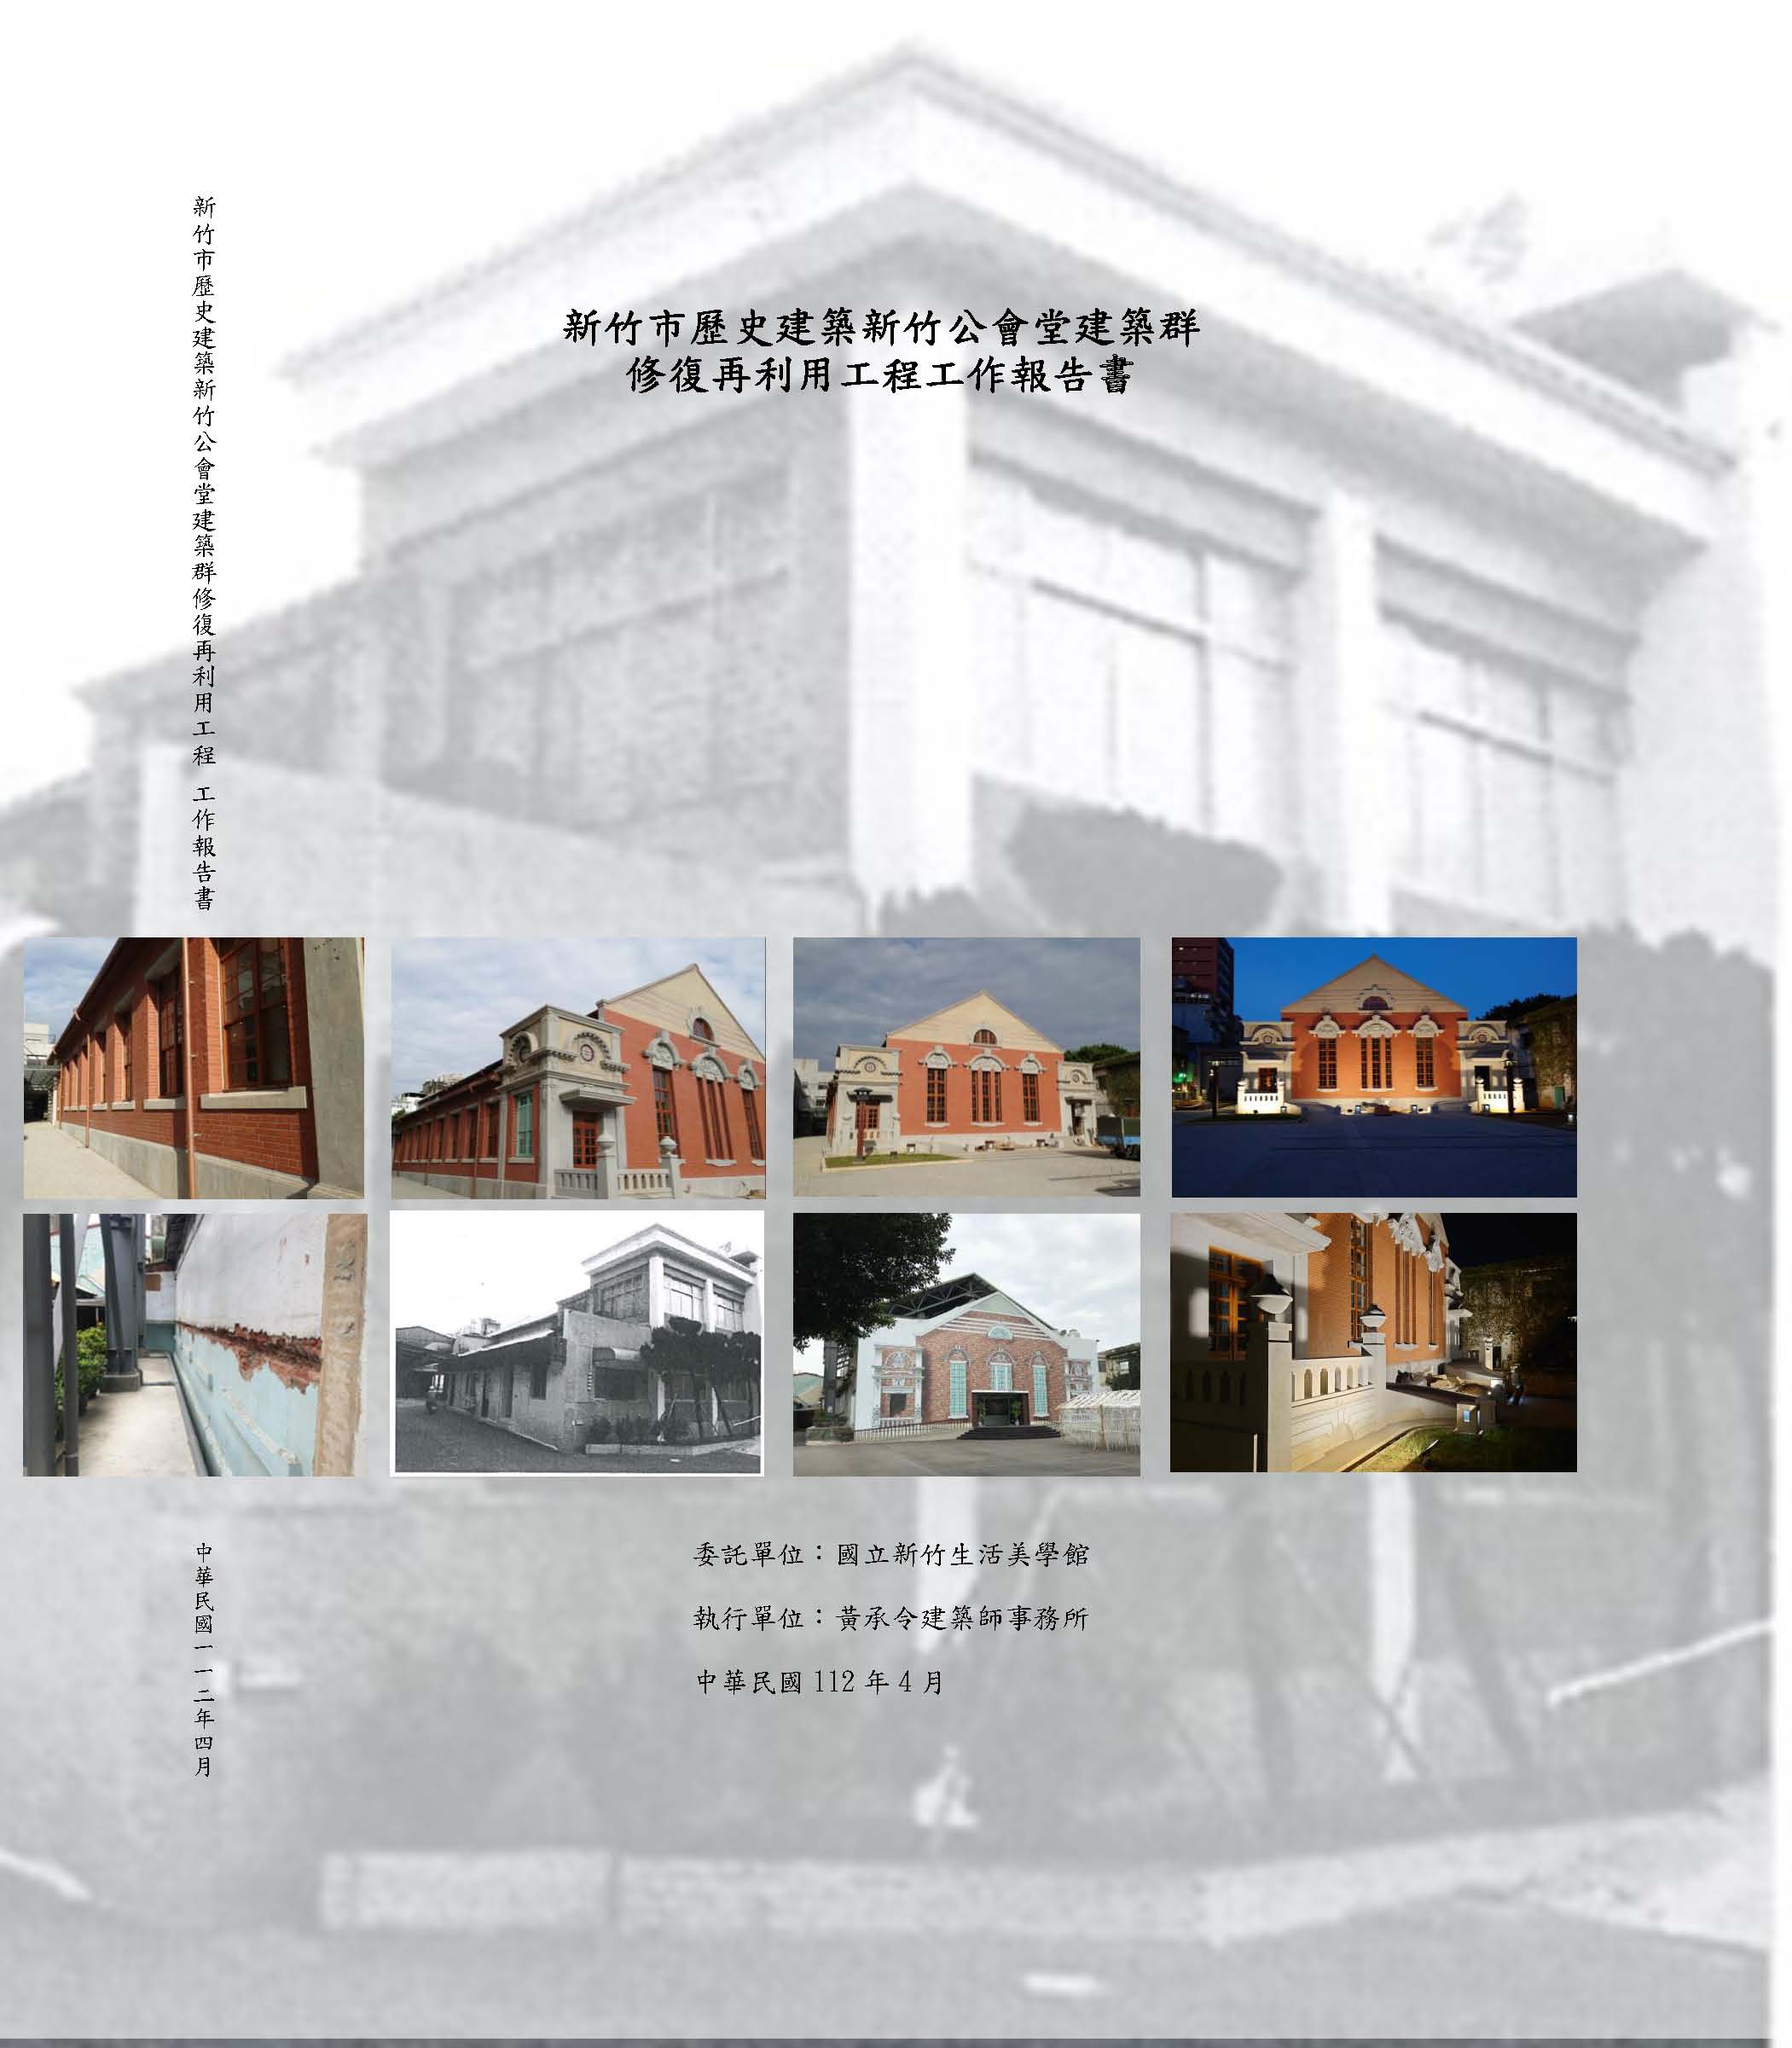 新竹市歷史建築新竹公會堂建築群修復再利用工程工作報告書